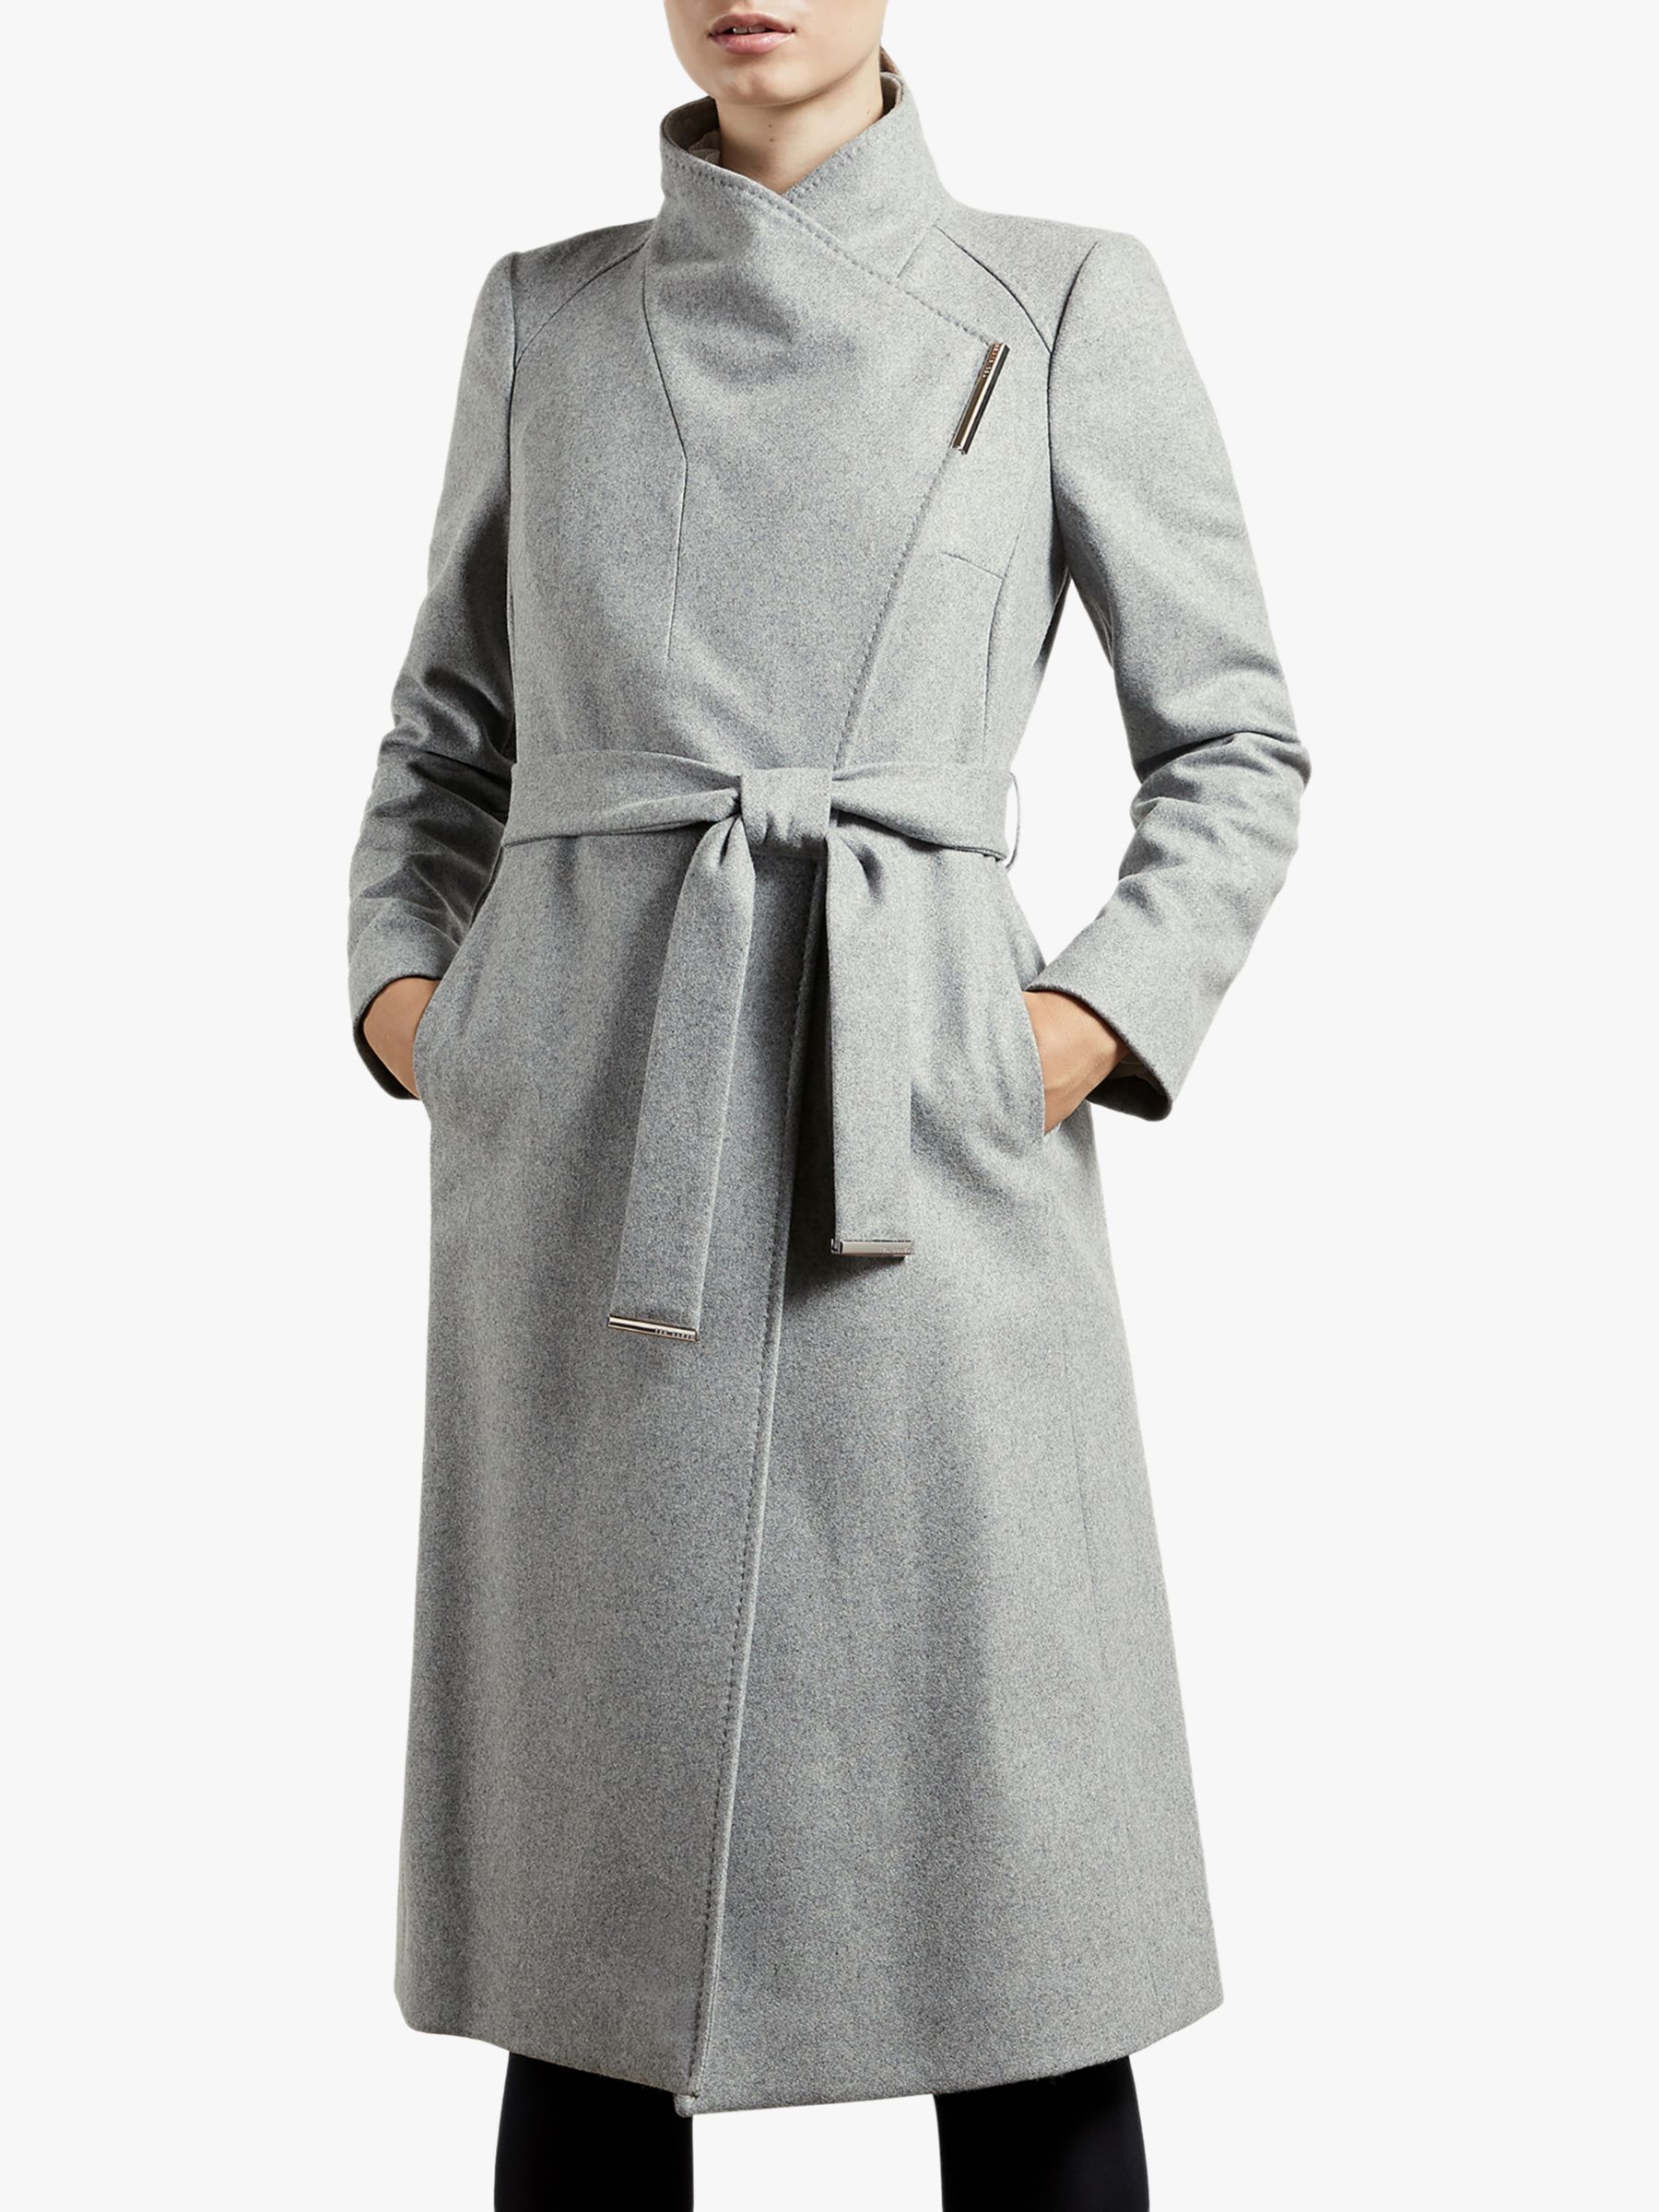 Ted Baker Rose Belted Wool Blend Coat, Grey at John Lewis & Partners